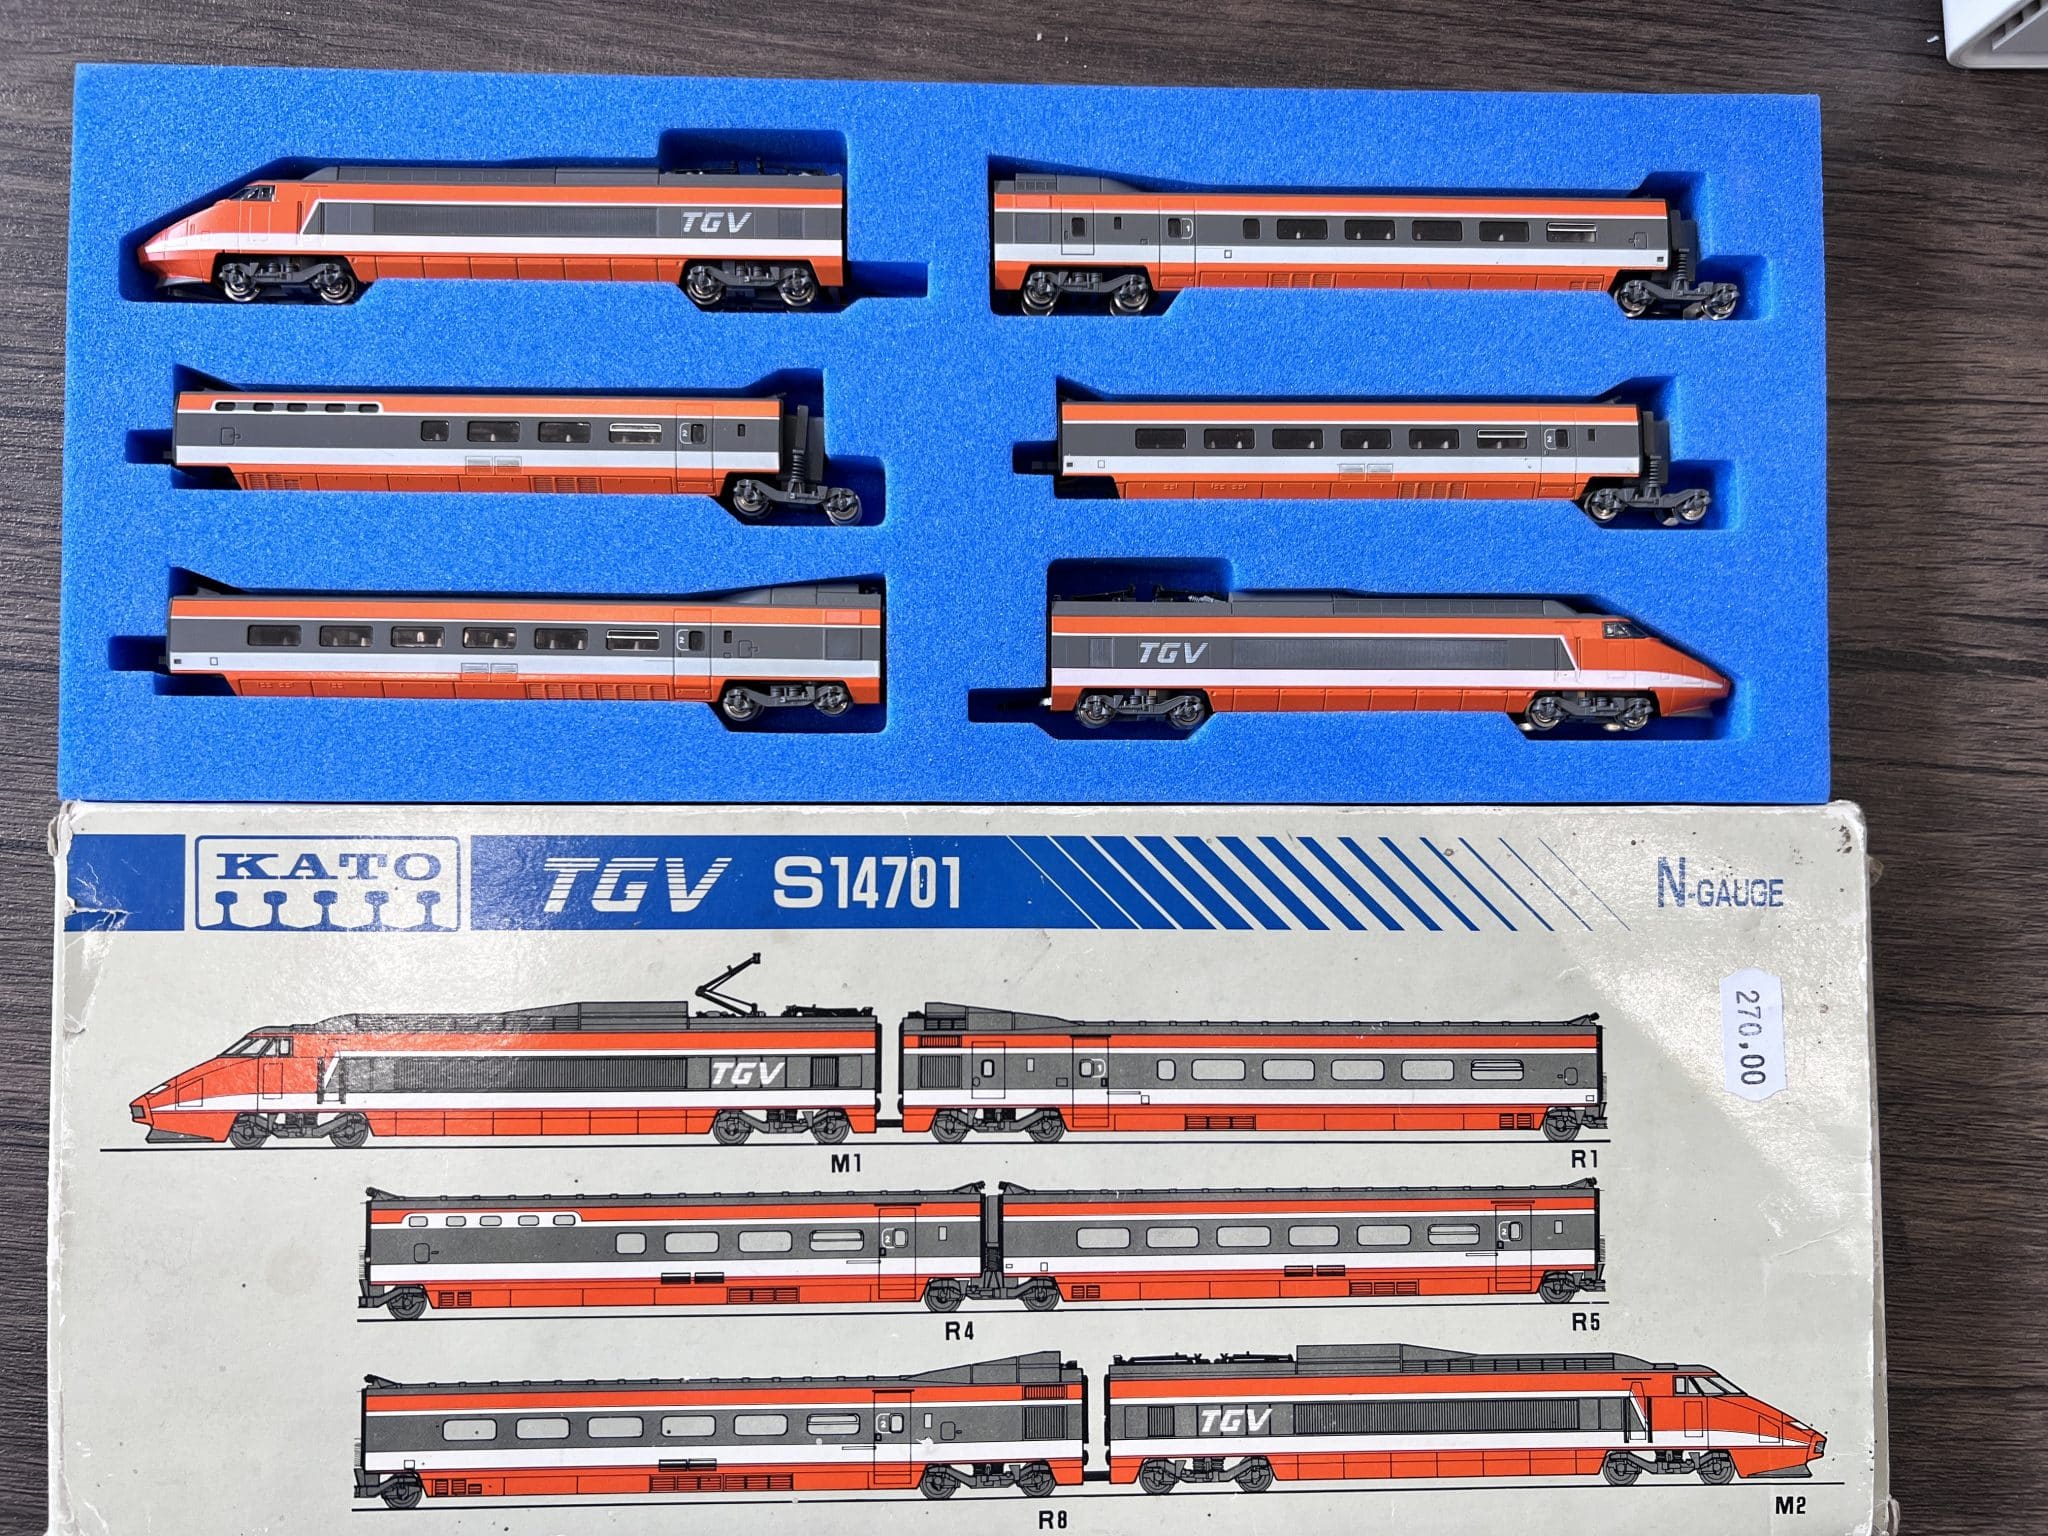 Kato Coffret 6 pièces TGV sud-Est S14701 N-gauge - Doudou Modélisme